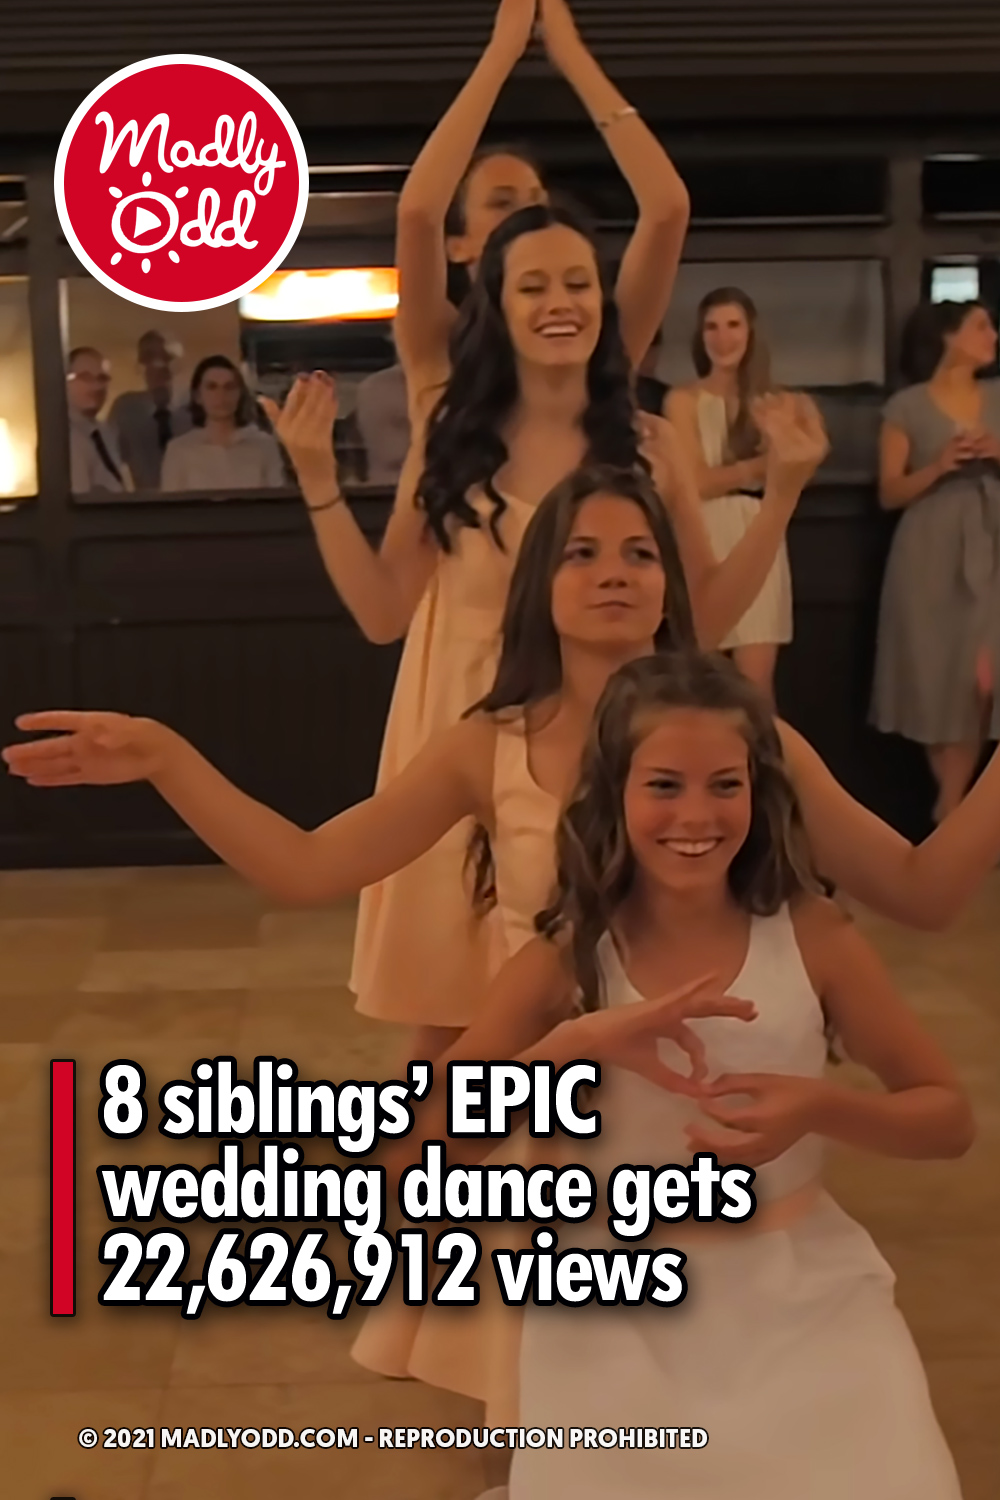 8 siblings’ EPIC wedding dance gets 22,626,912 views